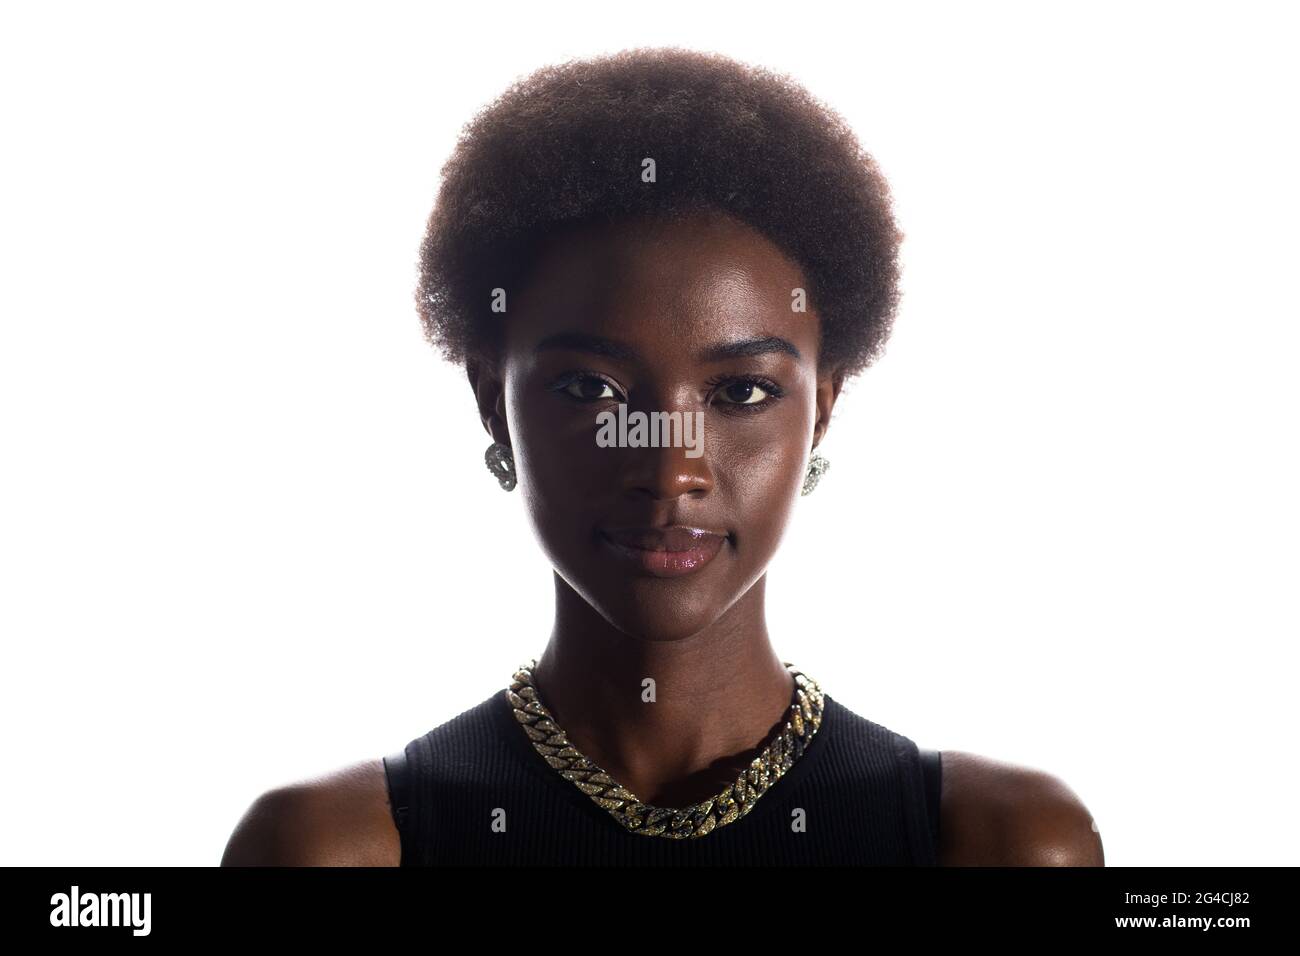 Primo piano ritratto a faccia intera di donna afroamericana nera con acconciatura afro su sfondo bianco dello studio. Foto Stock